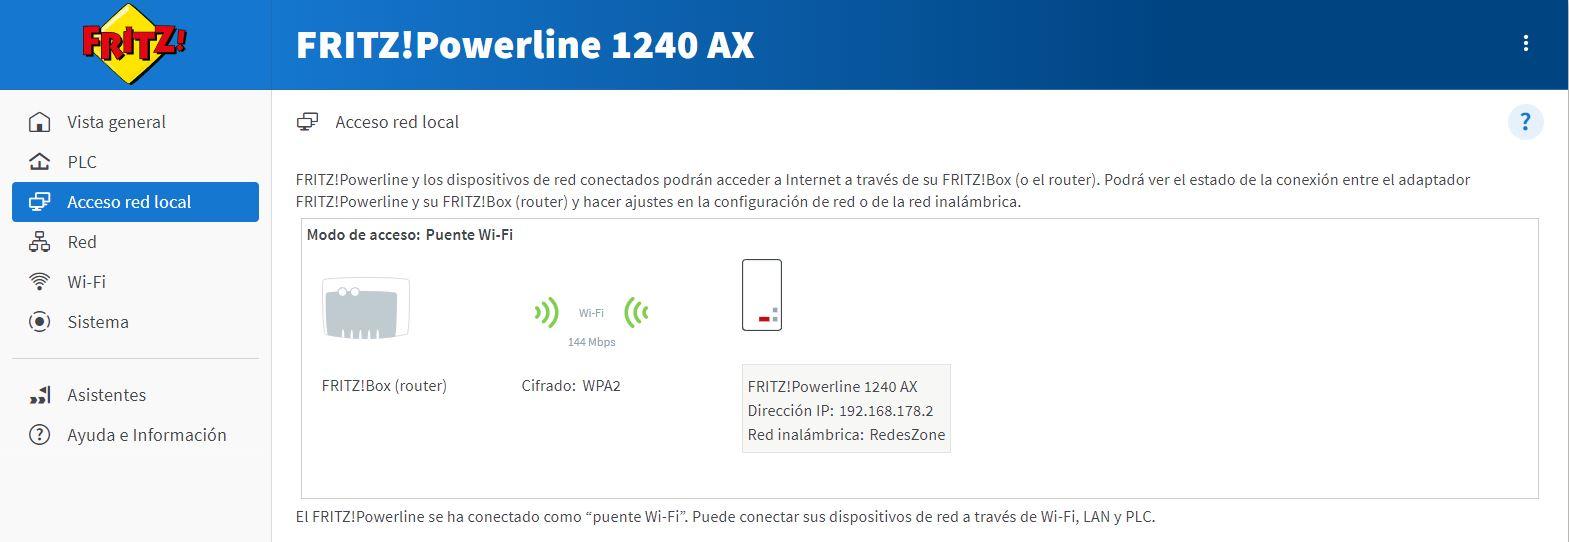 Configuración modo puente WiFi en el AVM FRITZ!Powerline 1240 AX